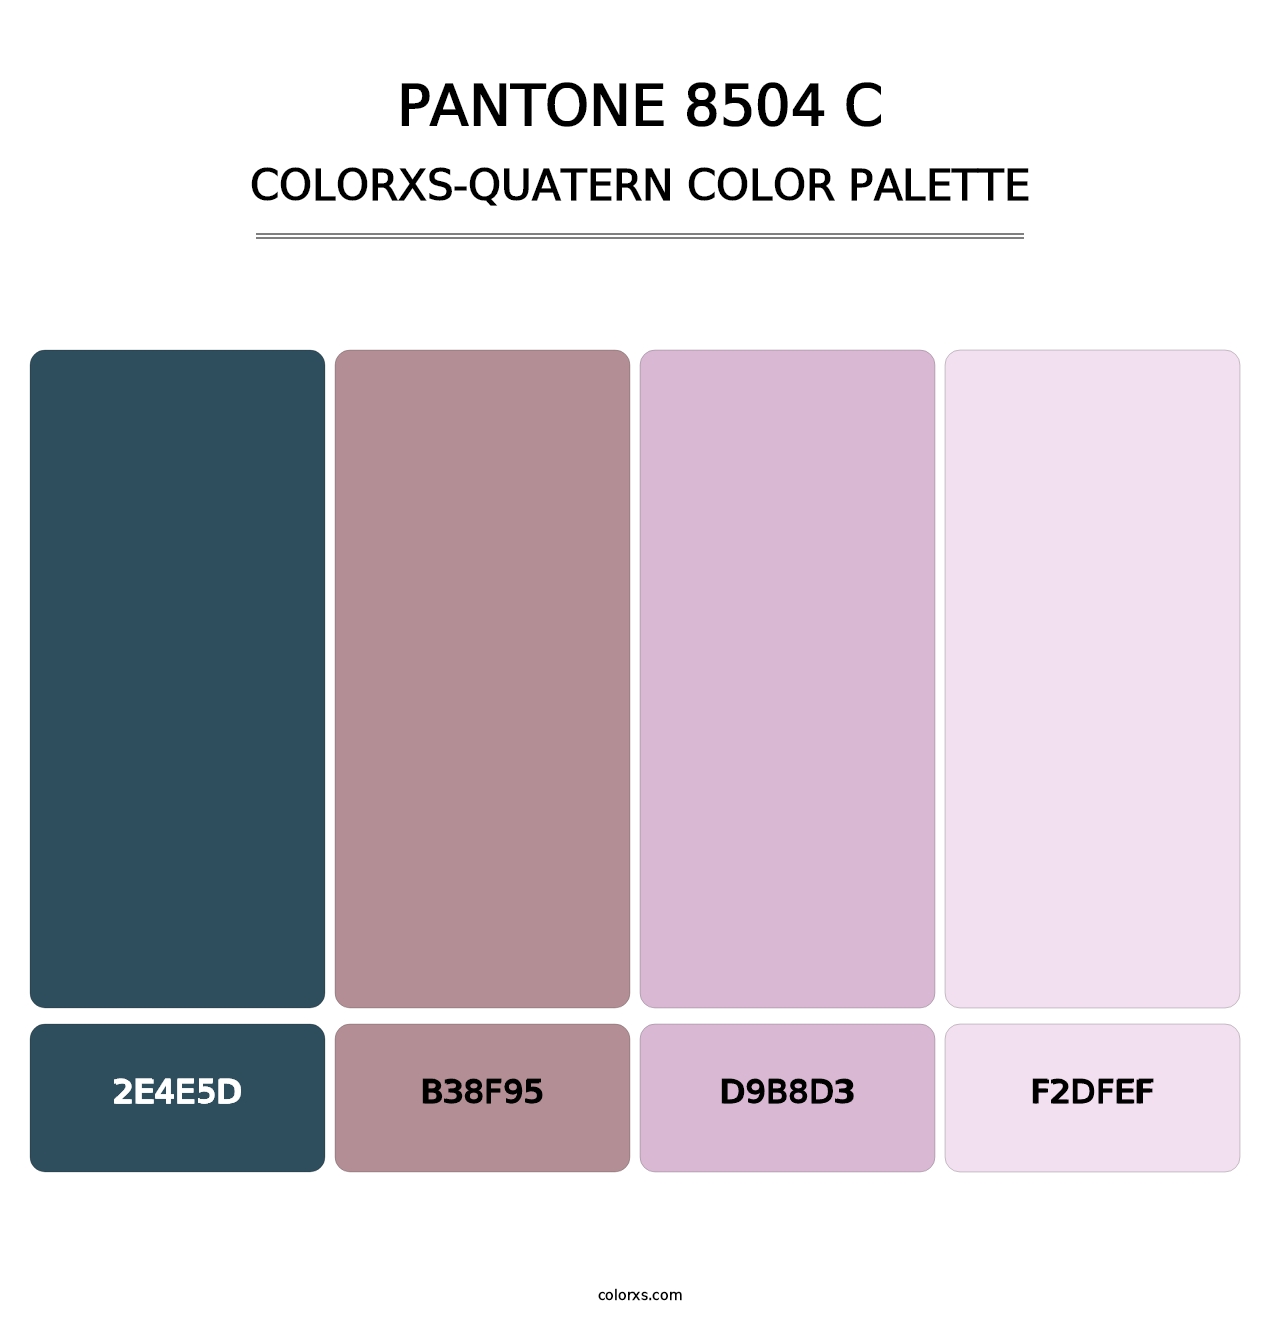 PANTONE 8504 C - Colorxs Quatern Palette